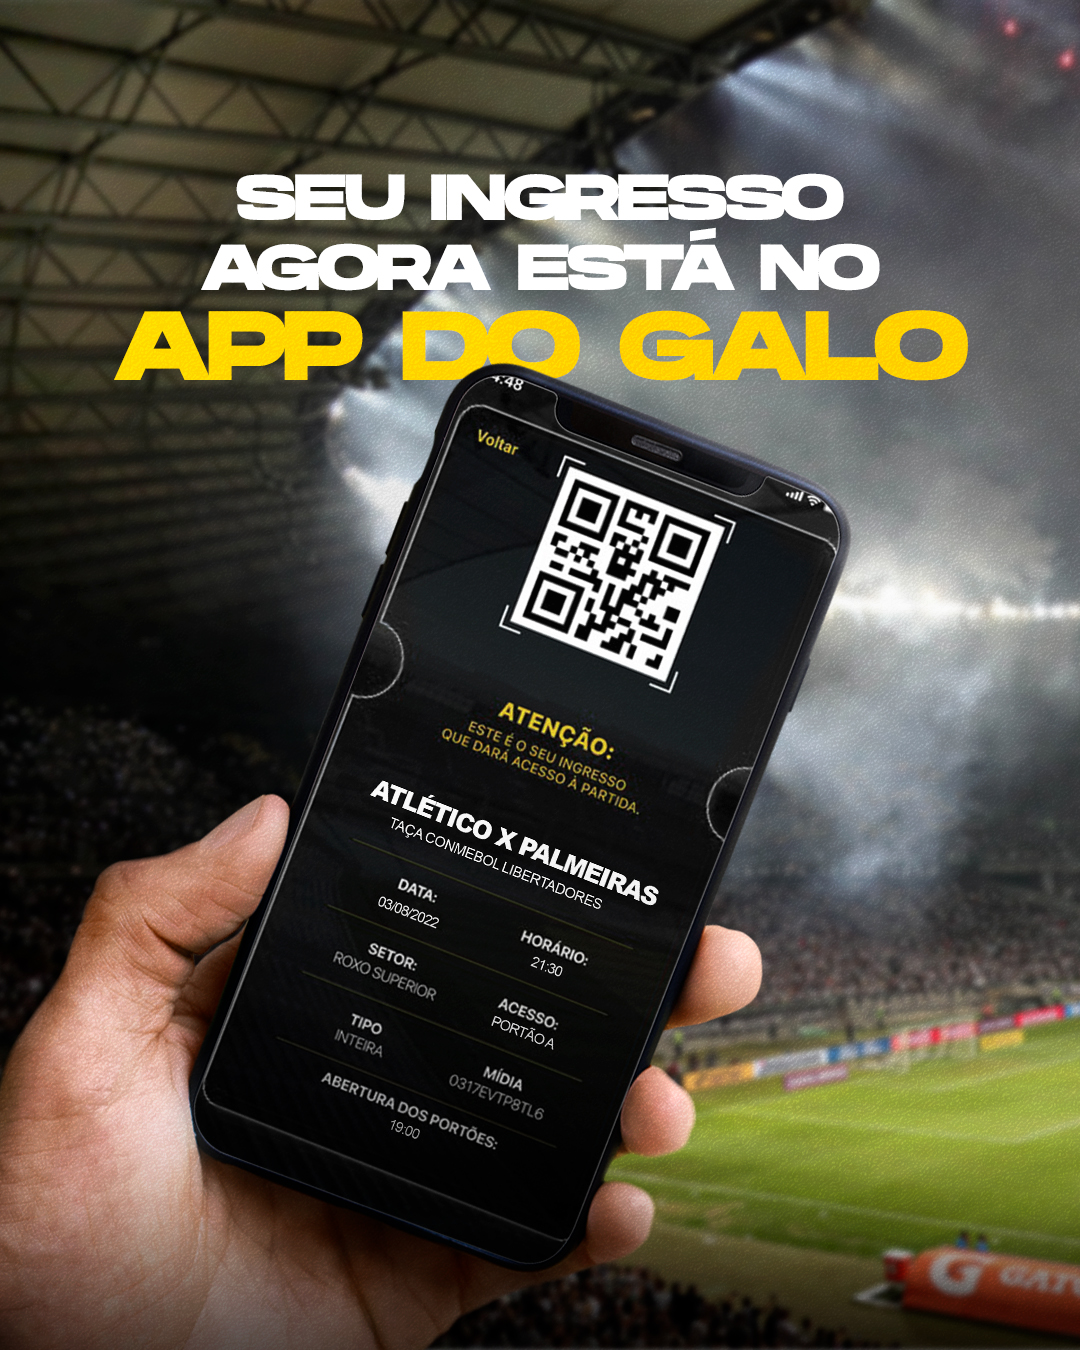 Ingresso digital no App dá acesso exclusivo no Mineirão – Clube